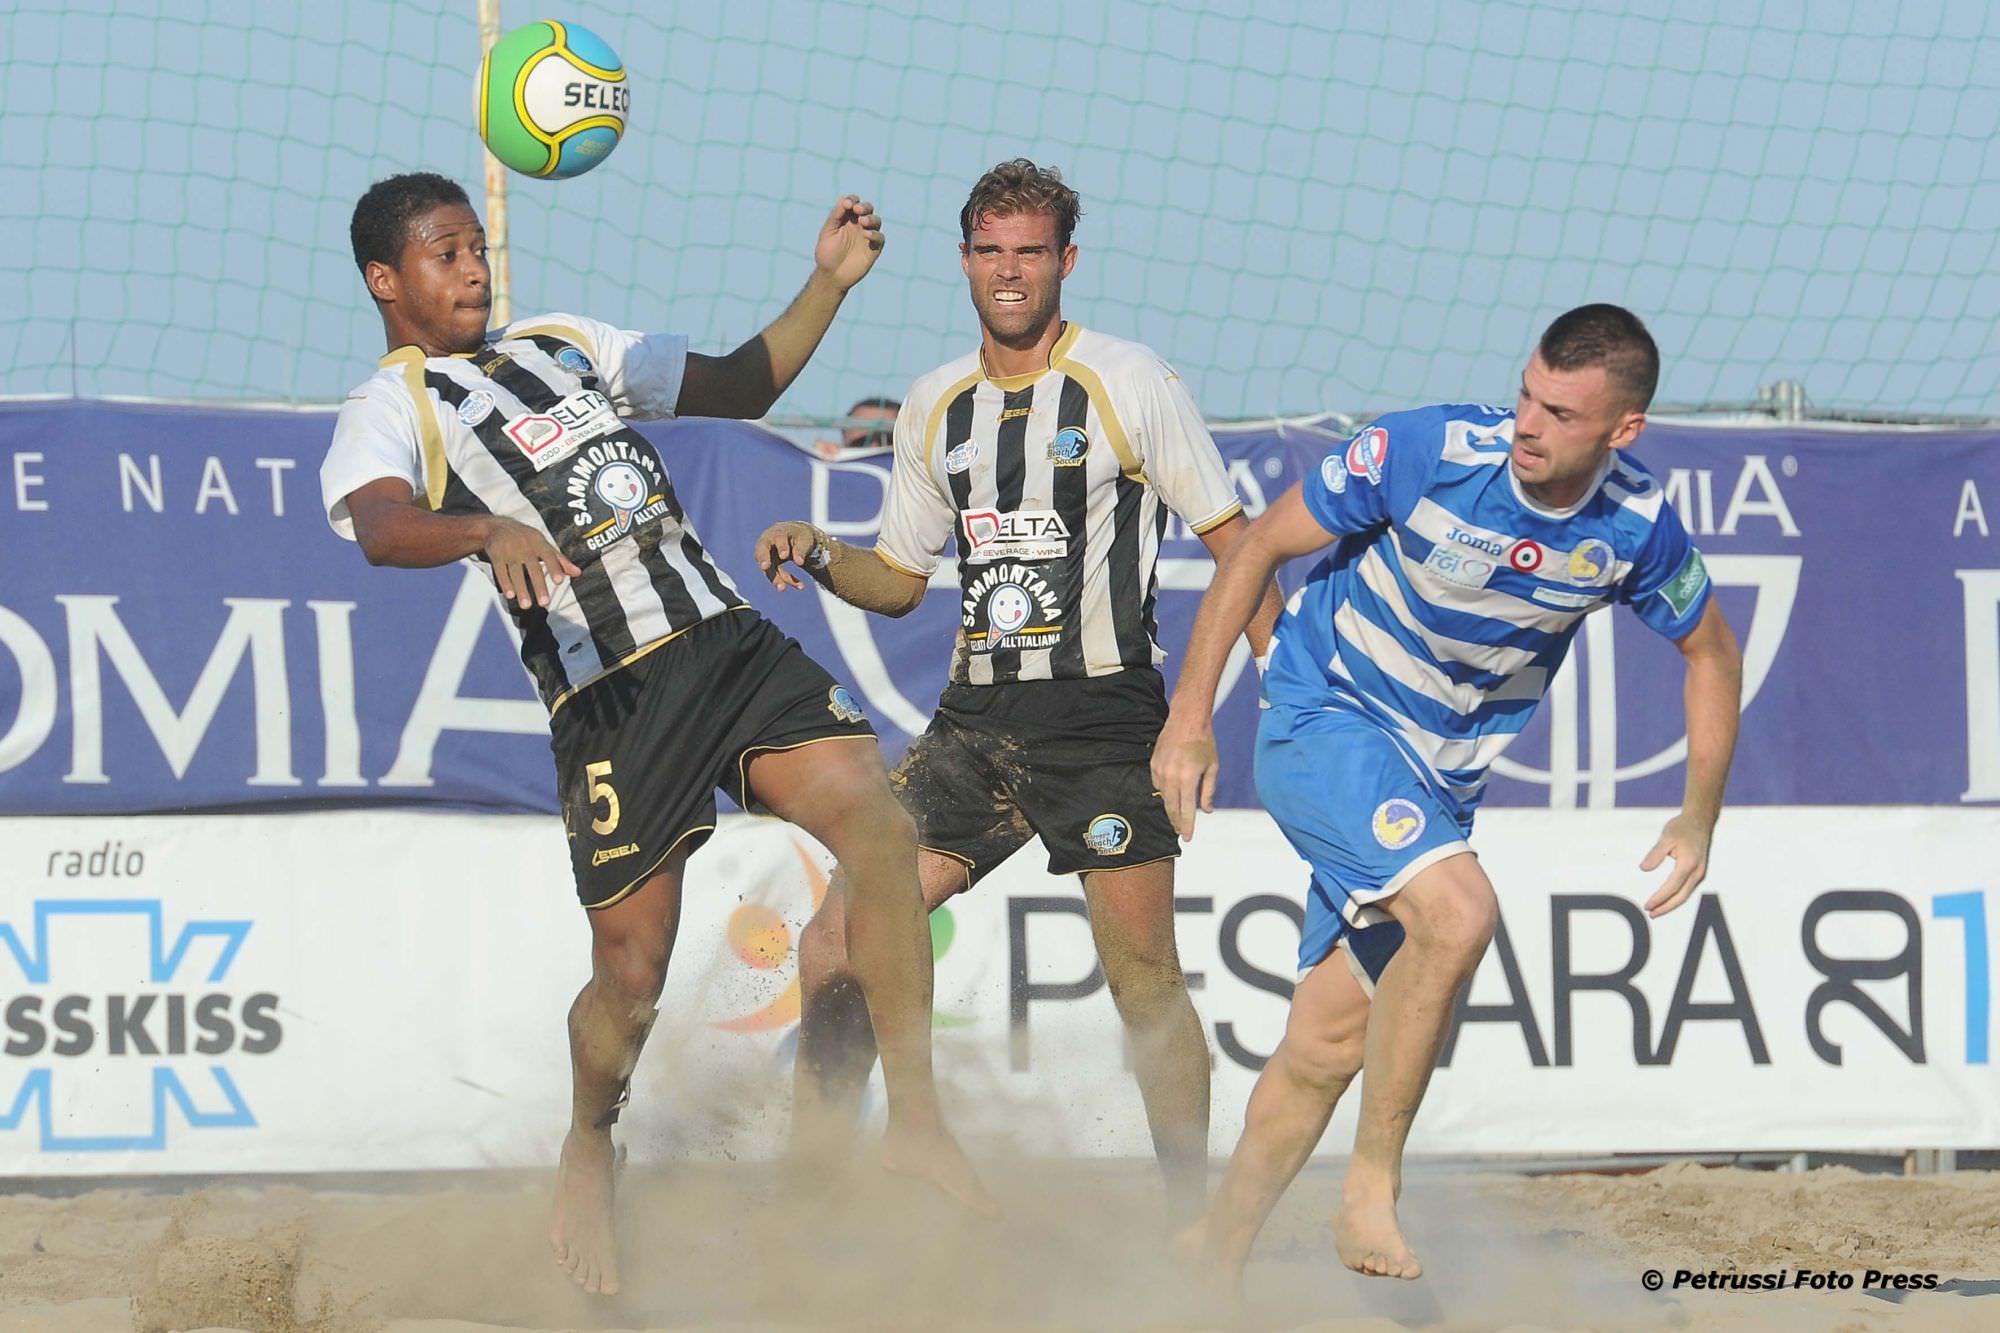 Lazio, Napoli e Brescia nella serie A (a 20 squadre) di beach soccer